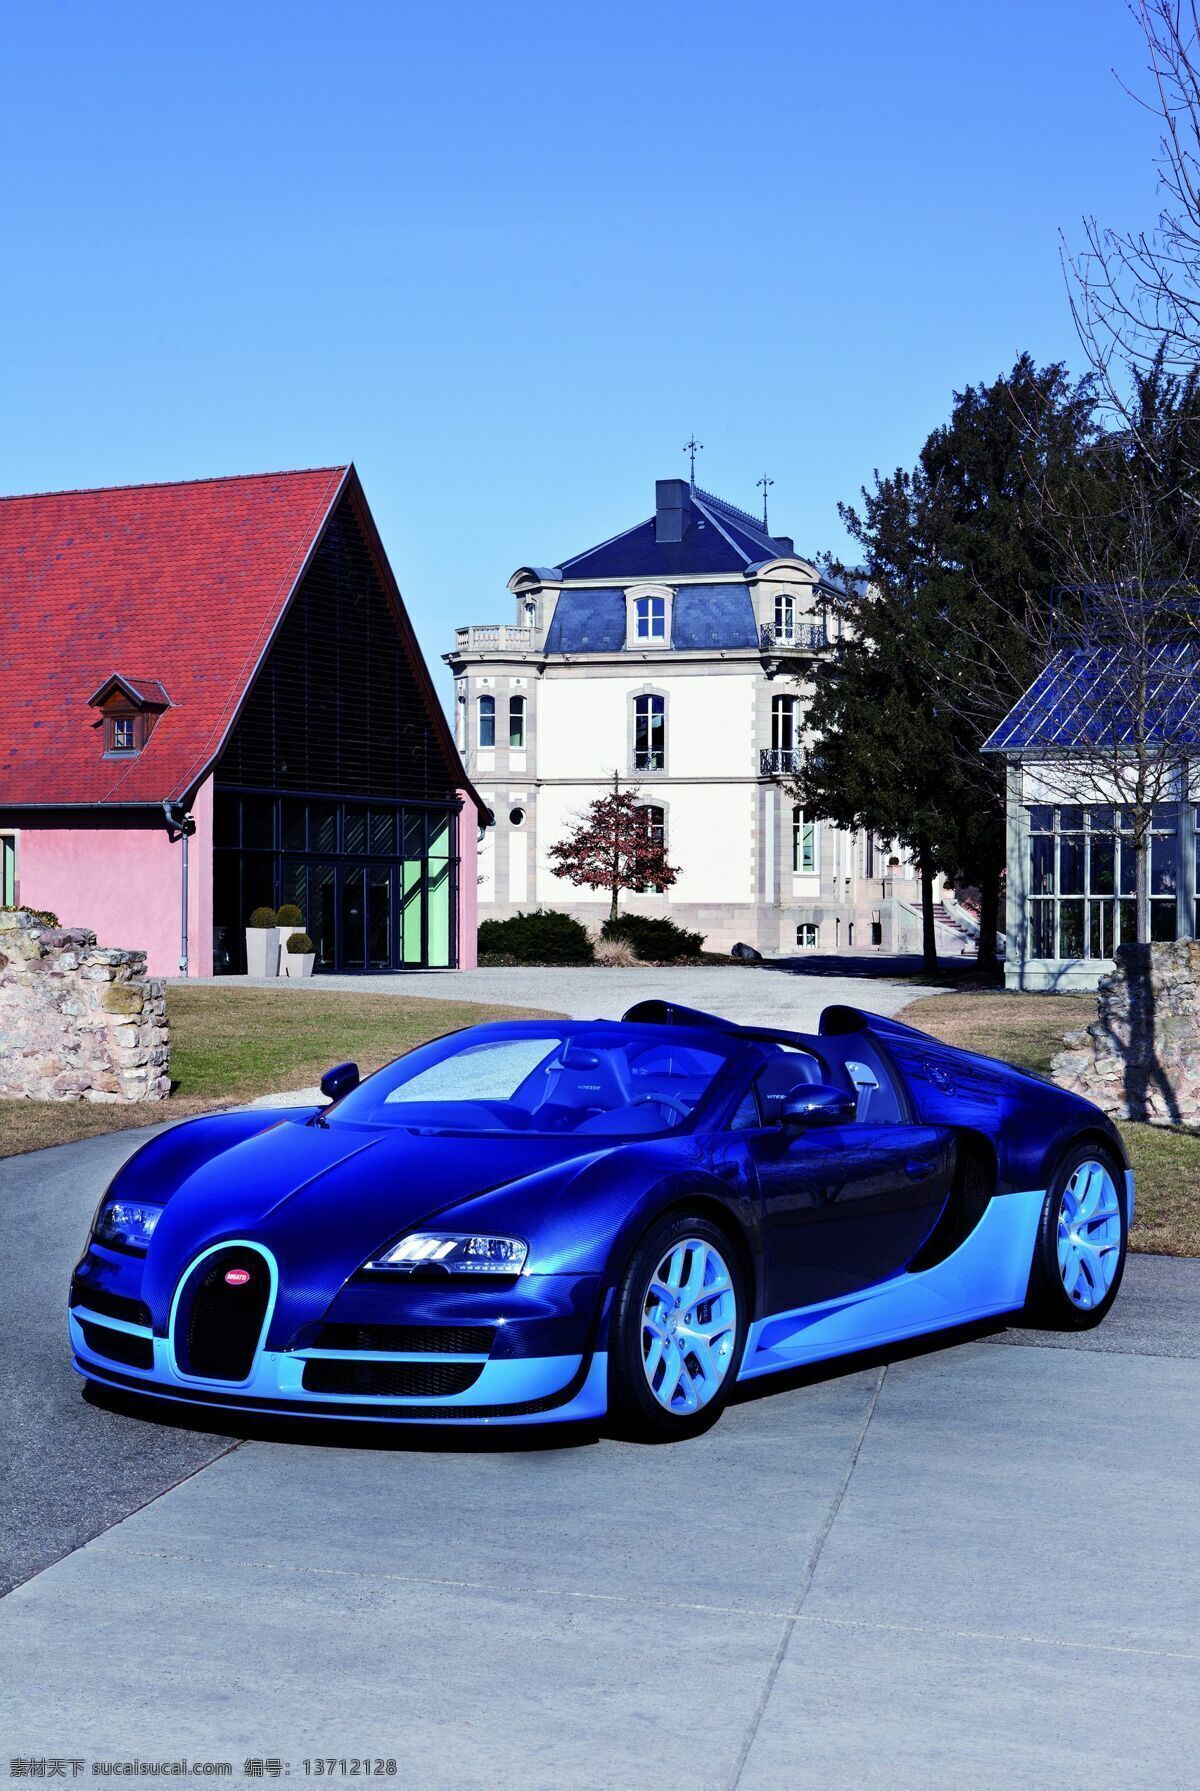 概念 高清 豪车 交通工具 经典 科技 名车 跑车 布加迪 威龙 bugatti veyron 现代 奢华 现代科技 psd源文件